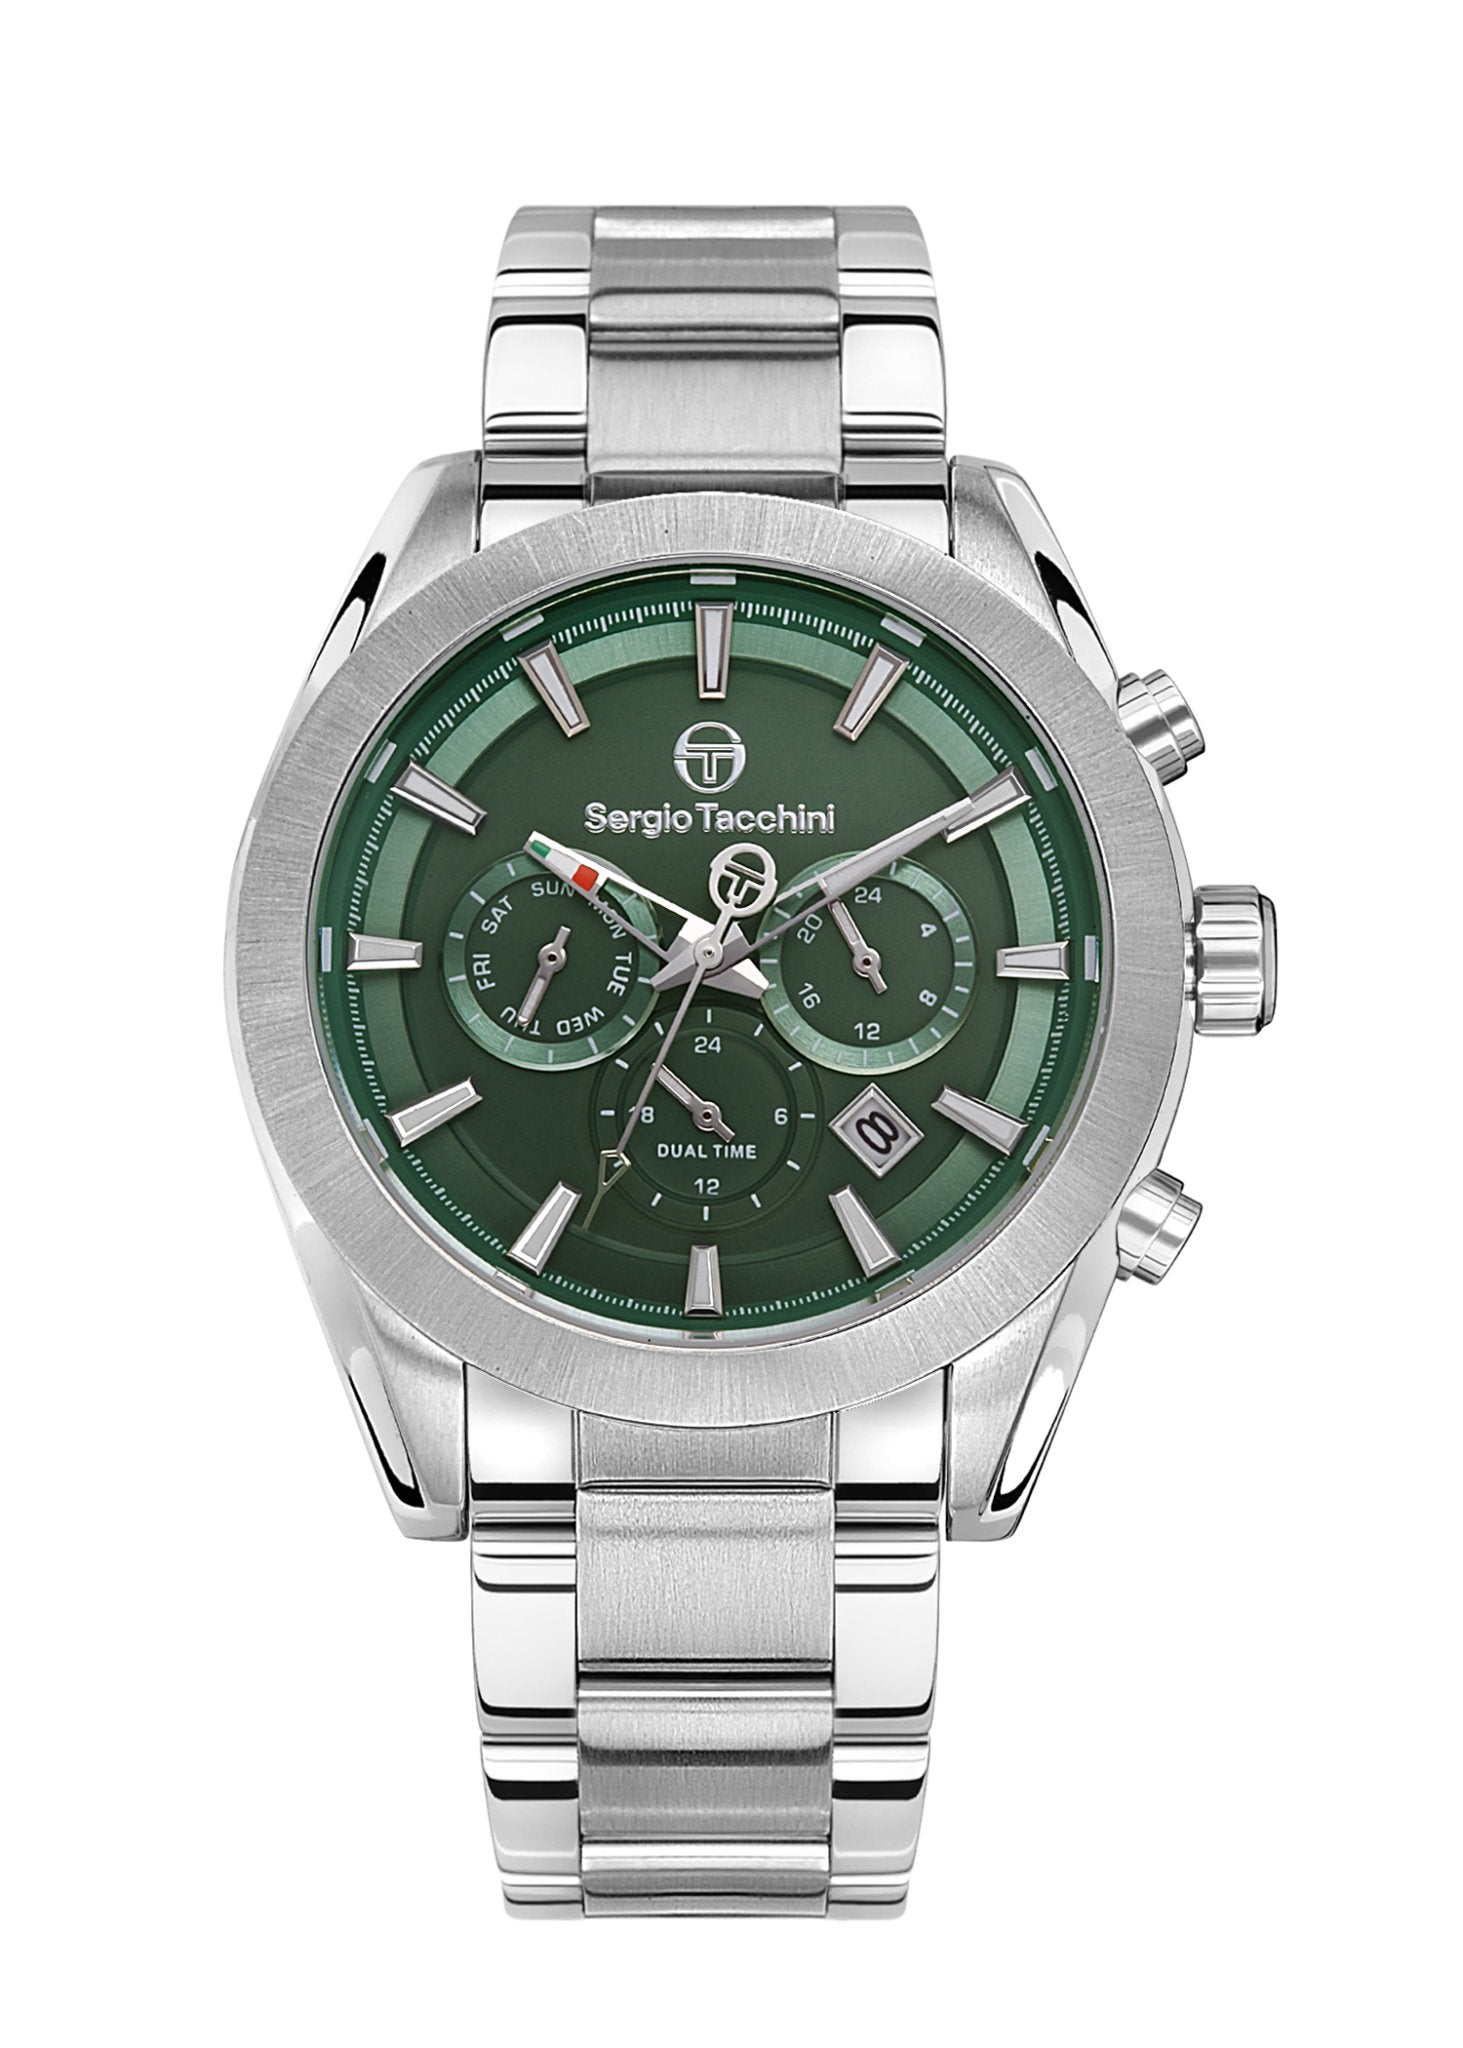 | Sergio Tacchini Men's Watch ST.1.10397-4 - Takreem Fusion | - #sho| Sergio Tacchini Men's Watch ST.1.10397-4 - Takreem Fusion |p_name#| Sergio Tacchini Men's Watch ST.1.10397-4 - Takreem Fusion |WatchSergio TacchiniTakreem.joST.1.10397-48682308152586SilverStainless SteelMen Sergio Tacchini Men's Watch ST.1.10397-4 - Takreem Fusion